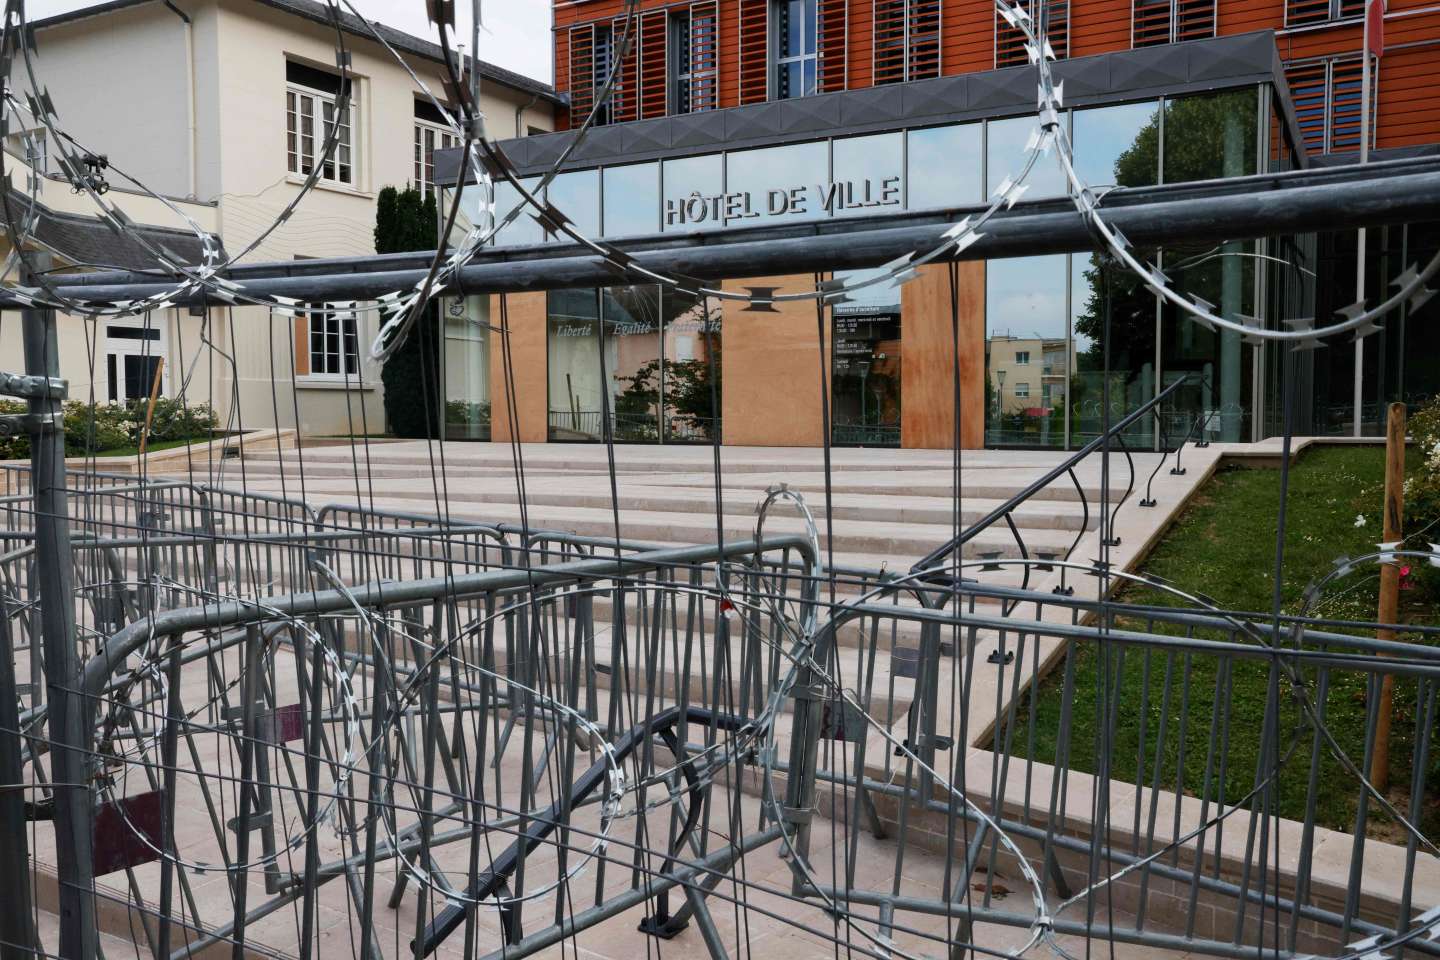 Le domicile du maire de L’Haÿ-les-Roses attaqué à la voiture bélier : douze personnes interpellées